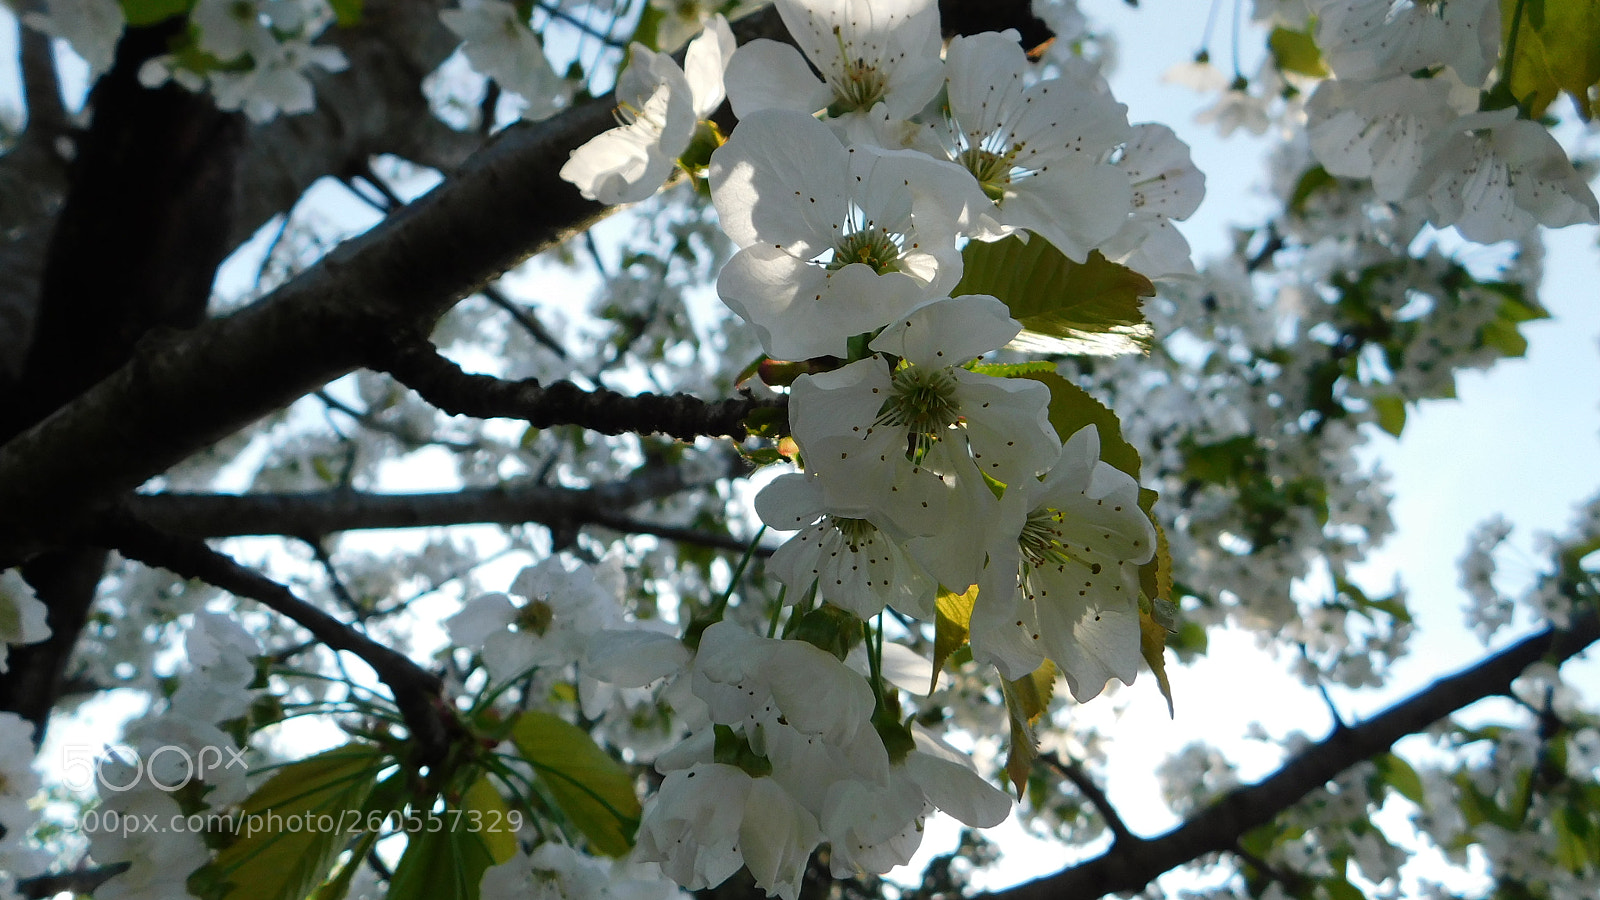 Nikon Coolpix B500 sample photo. Cseresznye virág photography